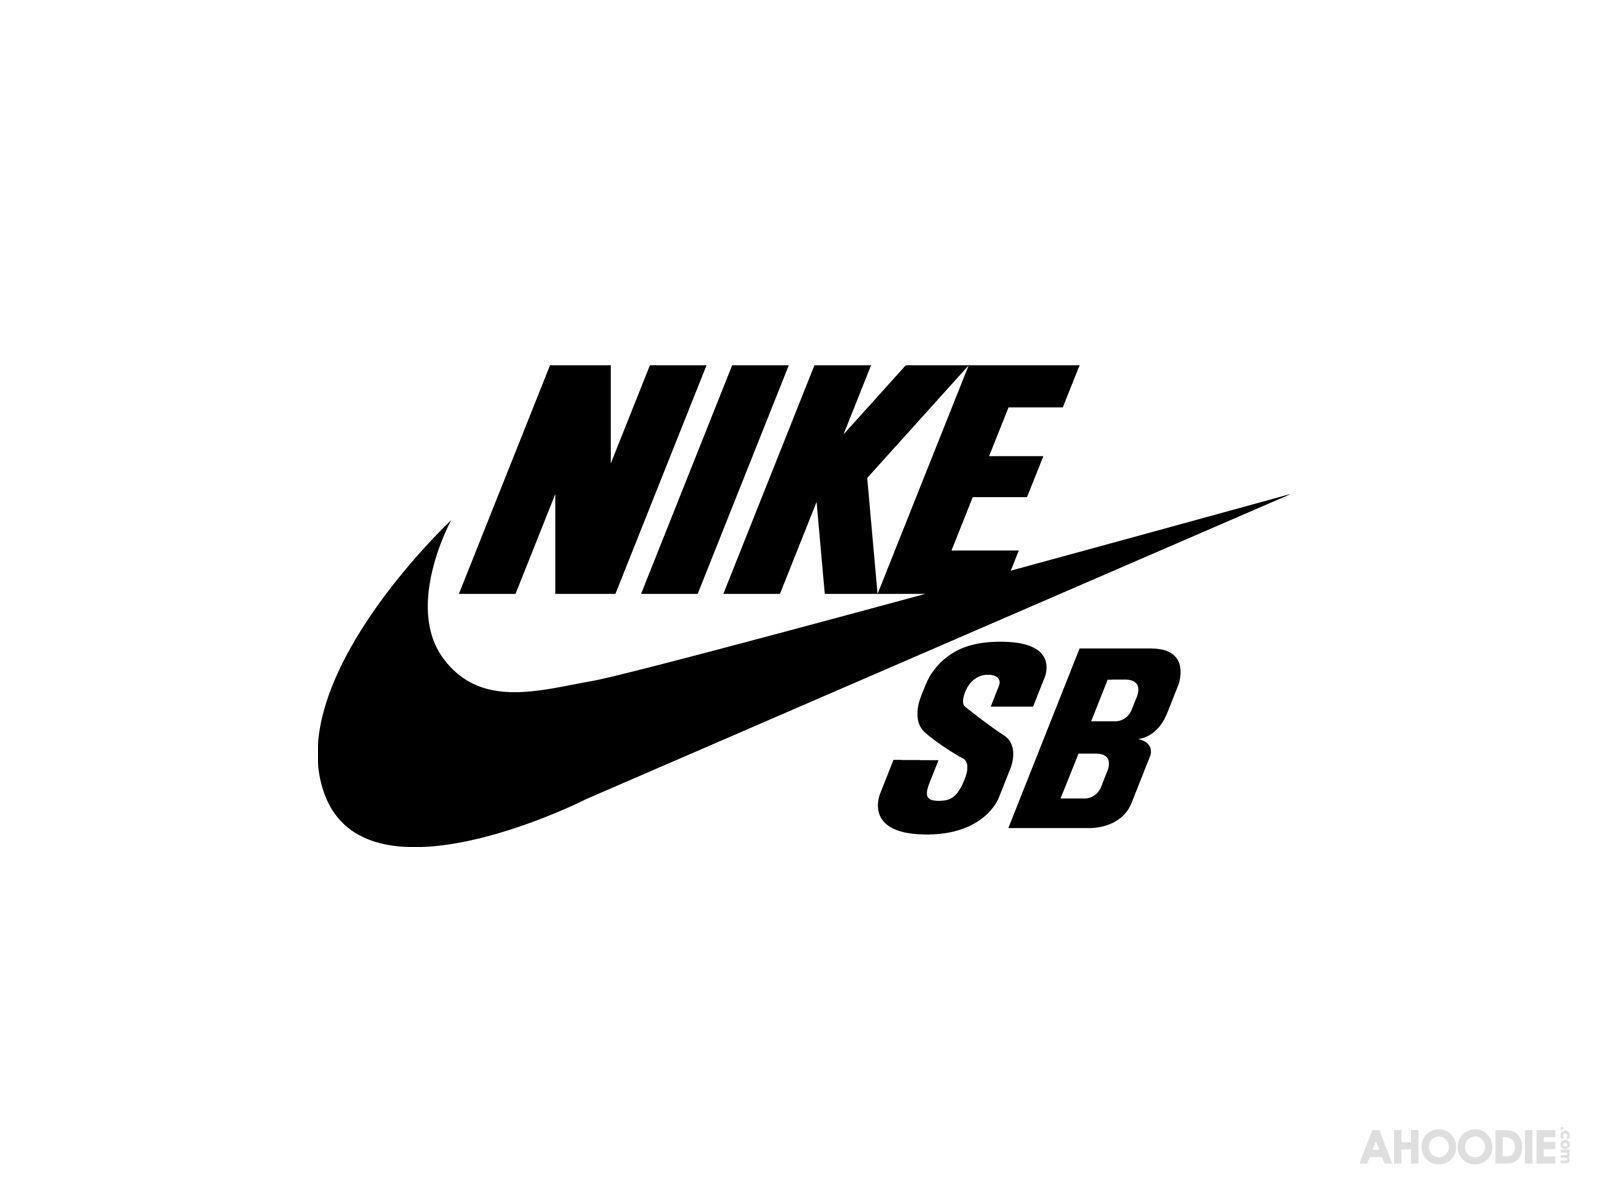 Nike Sb Wallpapers On Wallpaperdog